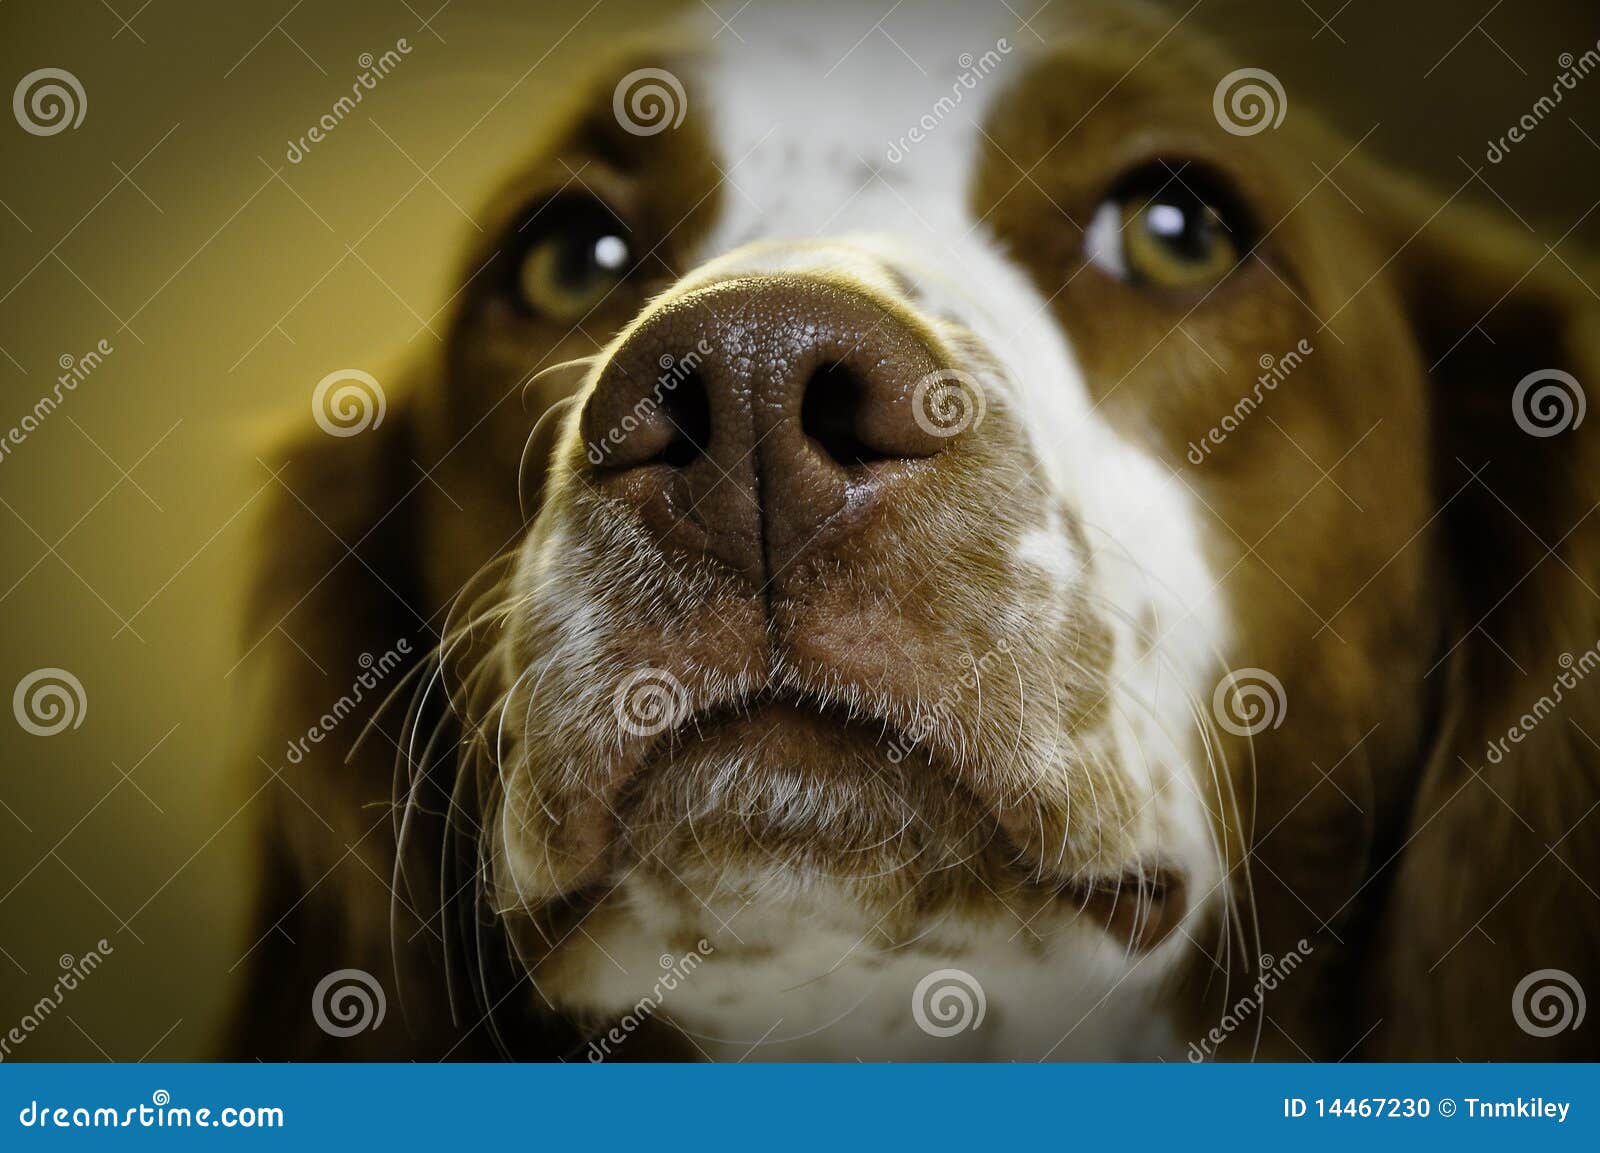 dog nose closeup